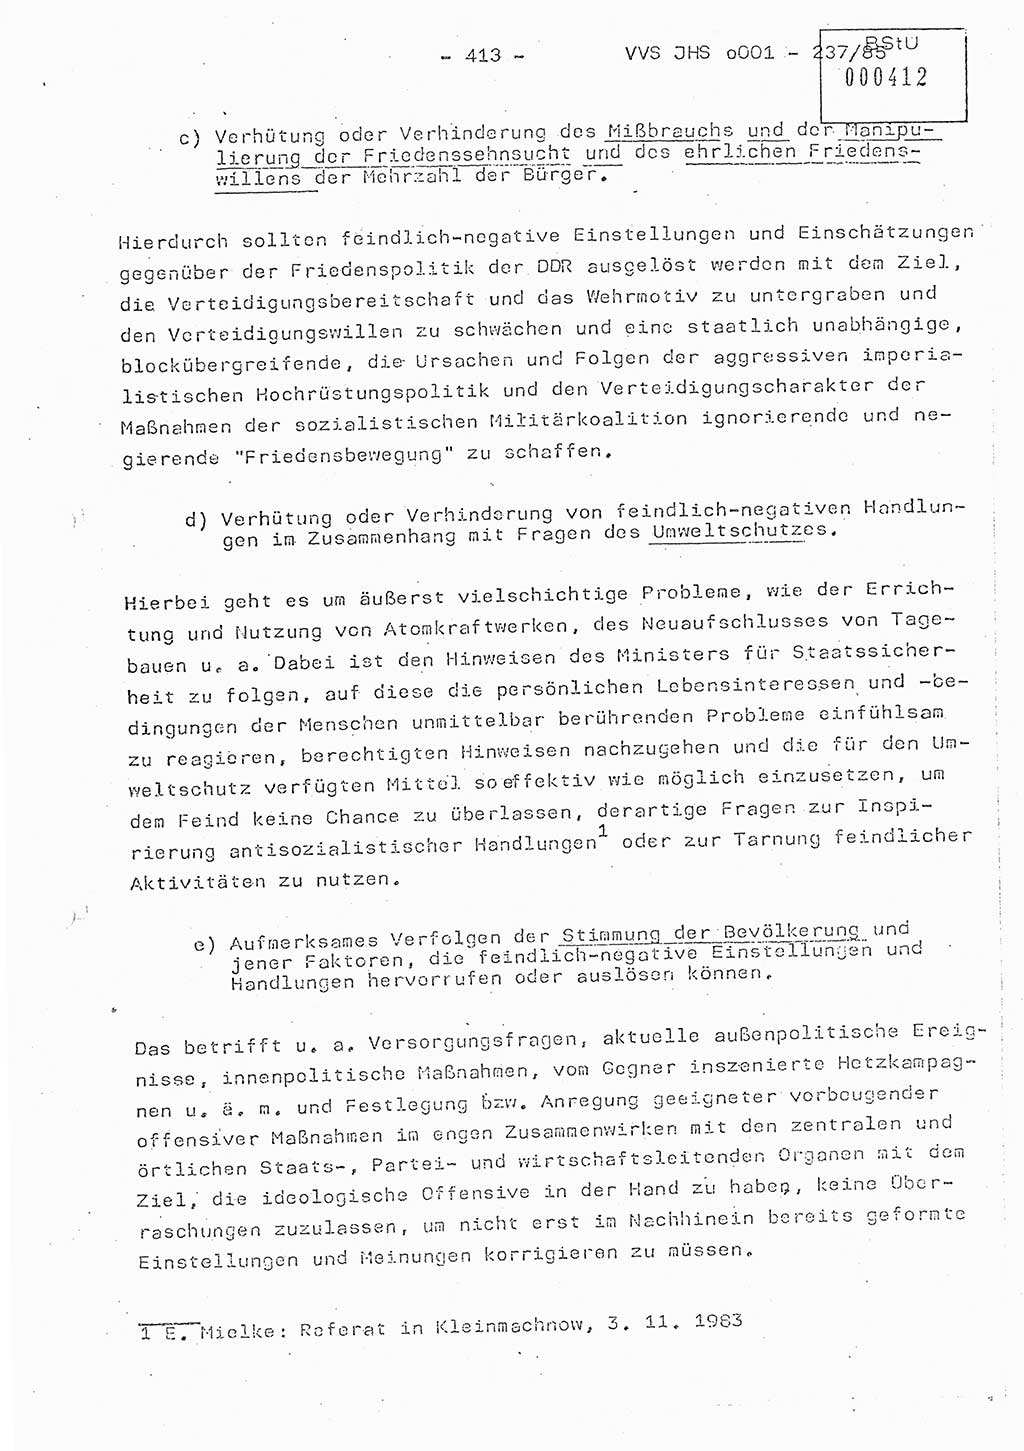 Dissertation Oberstleutnant Peter Jakulski (JHS), Oberstleutnat Christian Rudolph (HA Ⅸ), Major Horst Böttger (ZMD), Major Wolfgang Grüneberg (JHS), Major Albert Meutsch (JHS), Ministerium für Staatssicherheit (MfS) [Deutsche Demokratische Republik (DDR)], Juristische Hochschule (JHS), Vertrauliche Verschlußsache (VVS) o001-237/85, Potsdam 1985, Seite 413 (Diss. MfS DDR JHS VVS o001-237/85 1985, S. 413)